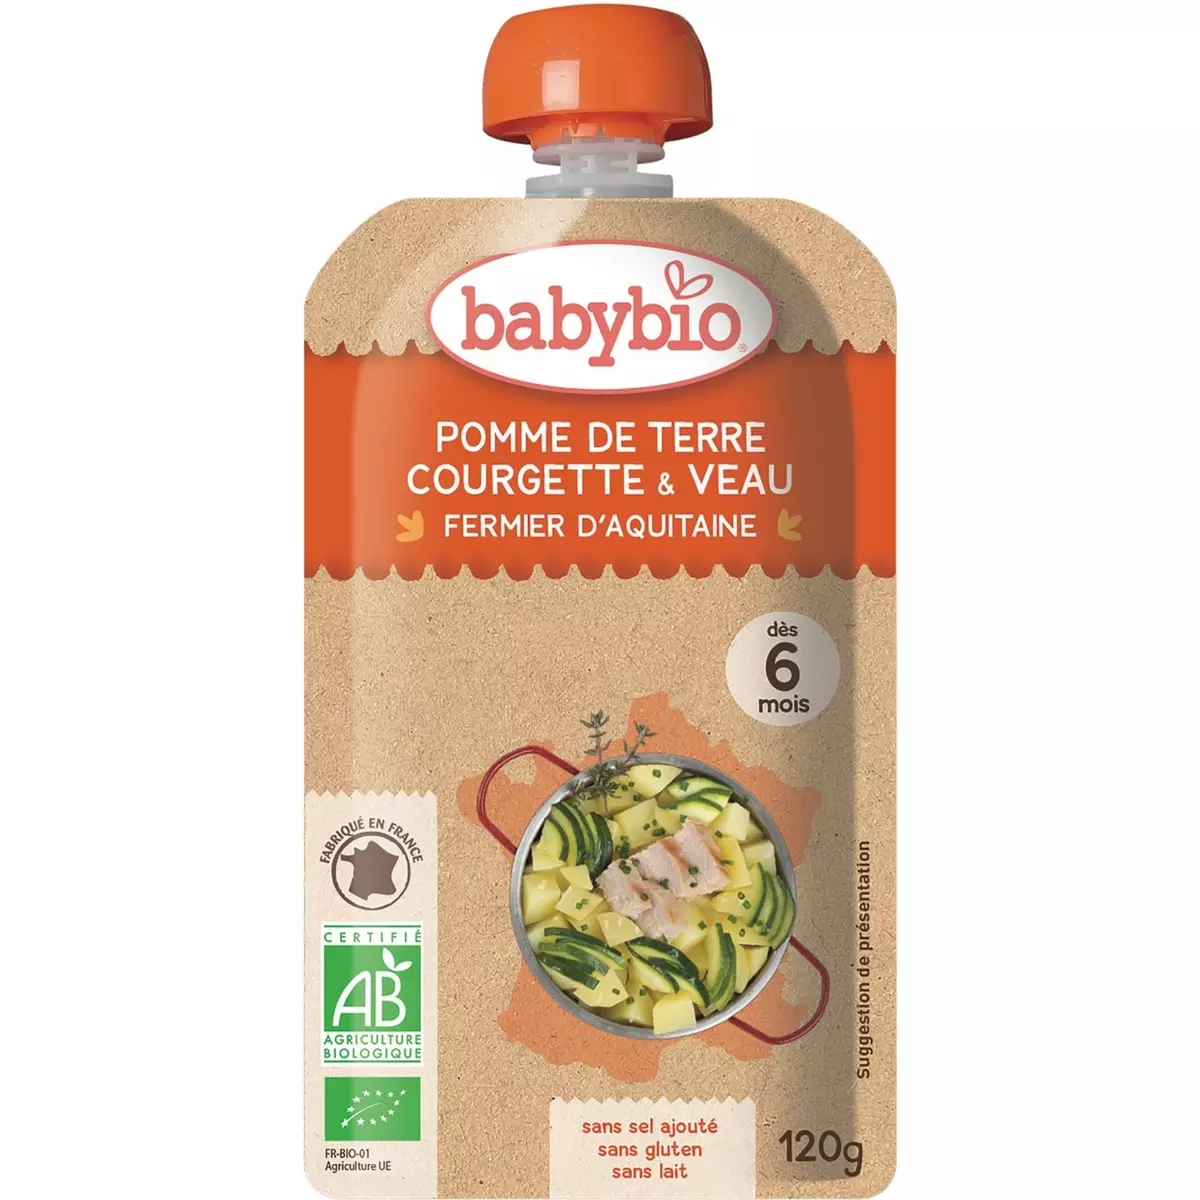 BABYBIO Babybio gourde pomme de terre courgette veau 120g dès 6 mois